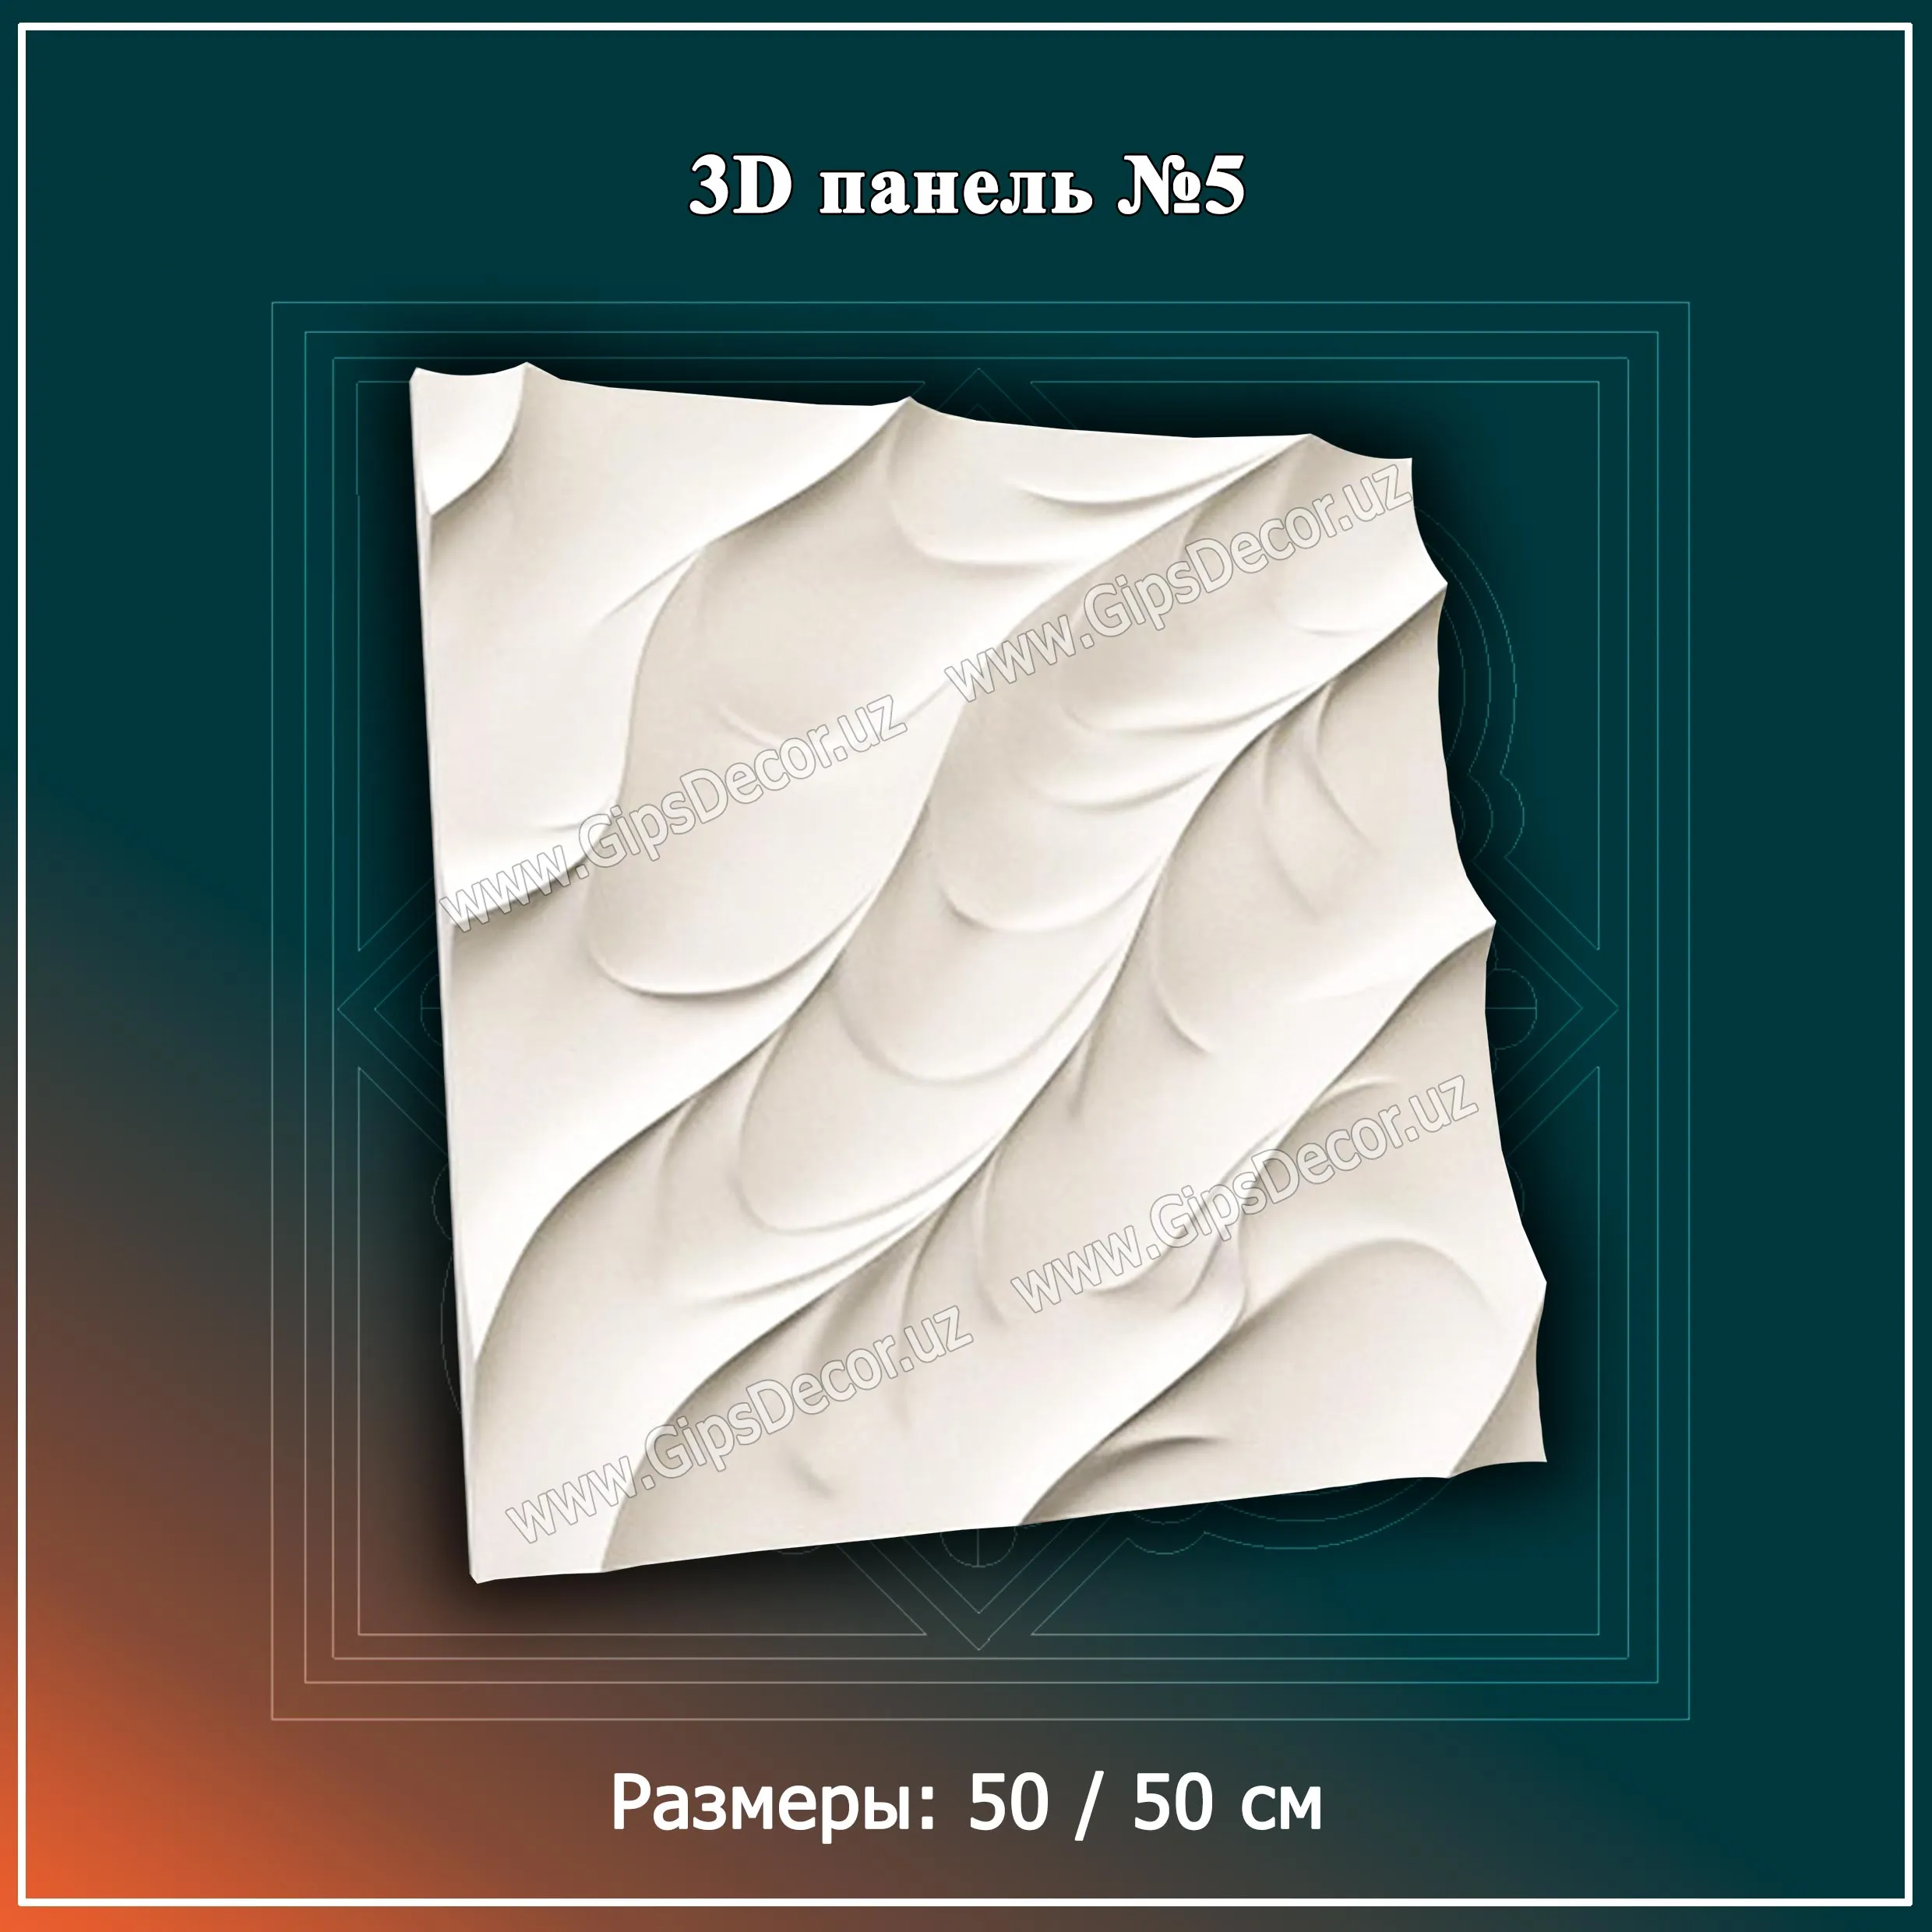 3D Панель №5 Размеры: 50 / 50 см#1